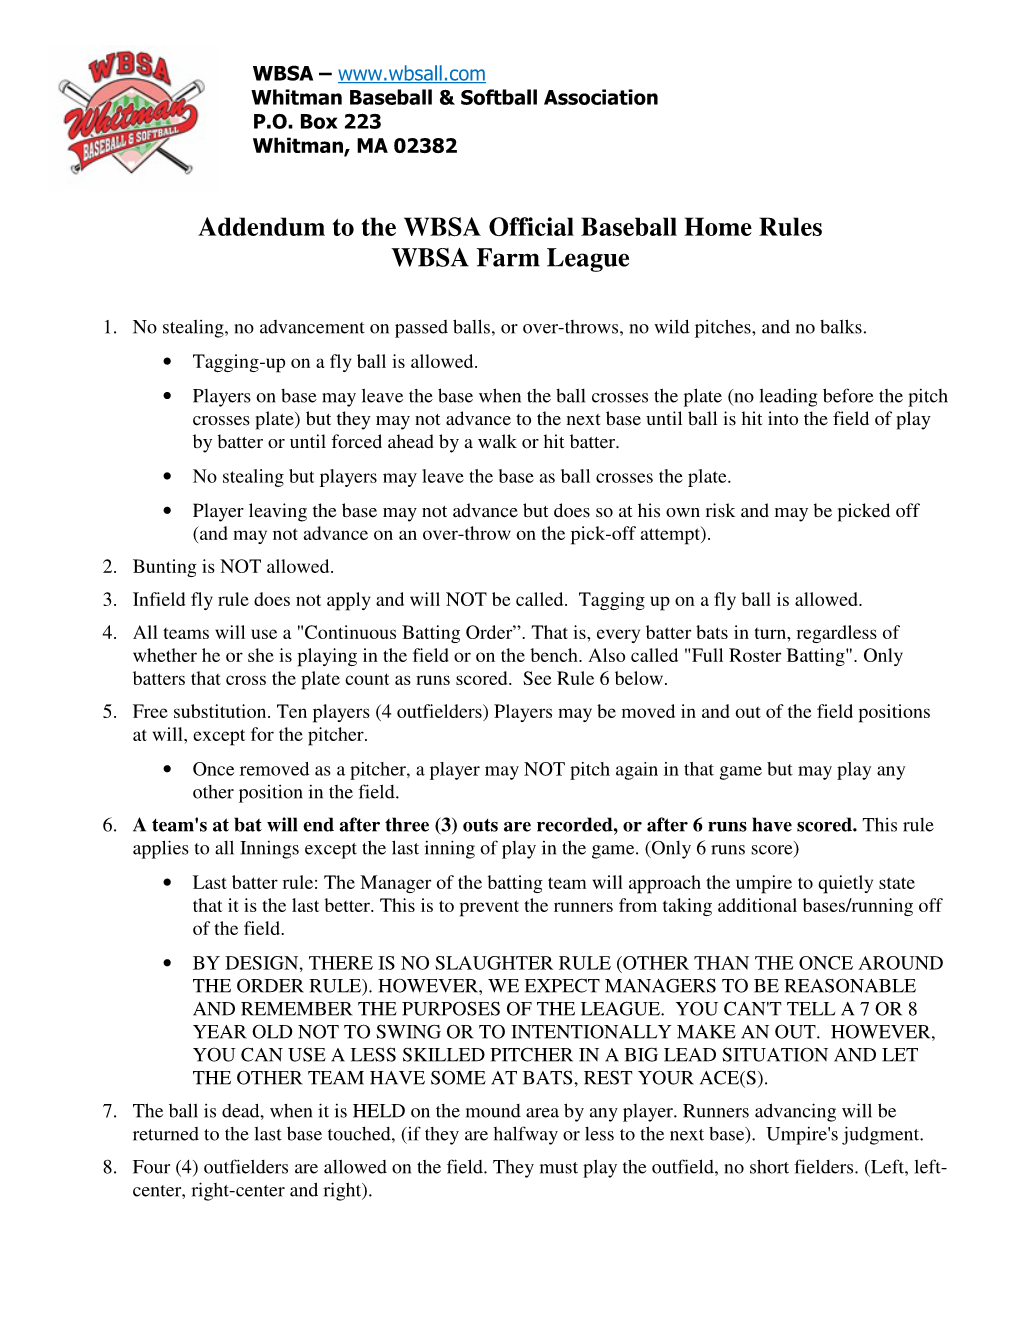 Addendum to the WBSA Official Baseball Home Rules WBSA Farm League